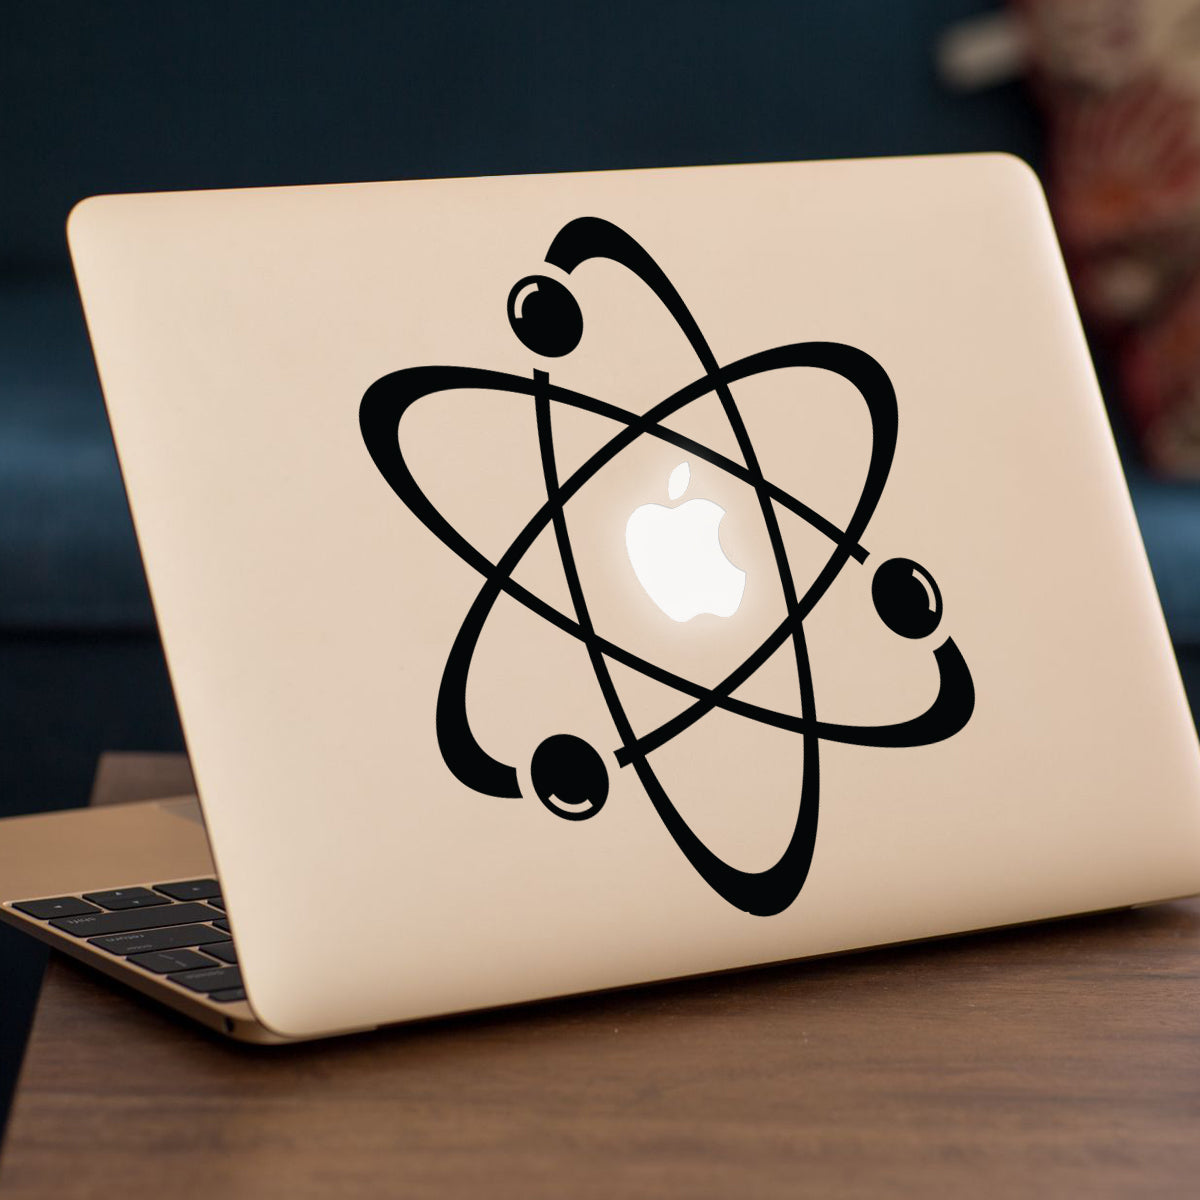 Big Bang Atom Macbook Decal